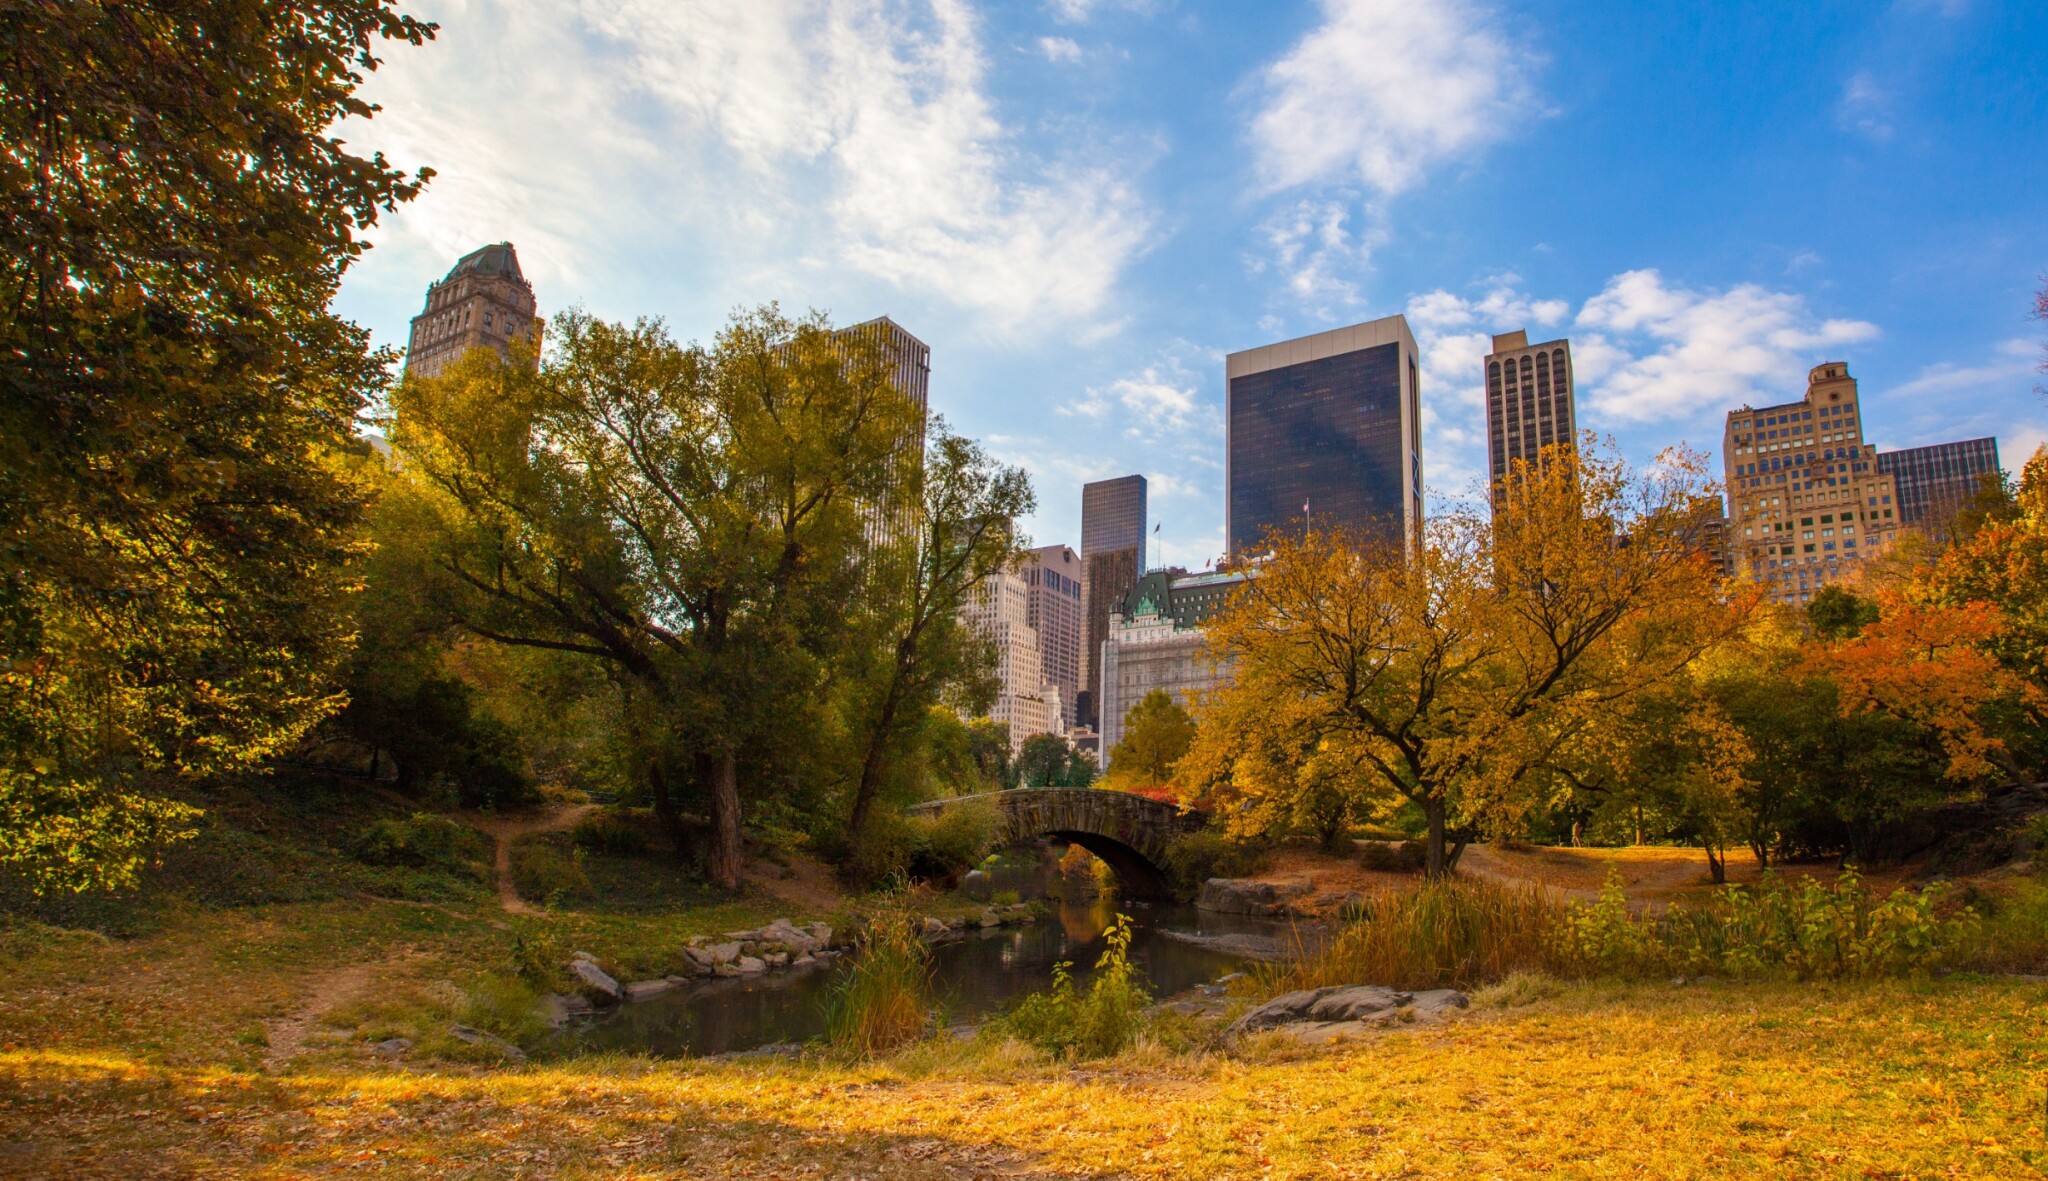 Podzim v New Yorku bude hodně barevný. Proč vyrazit právě teď